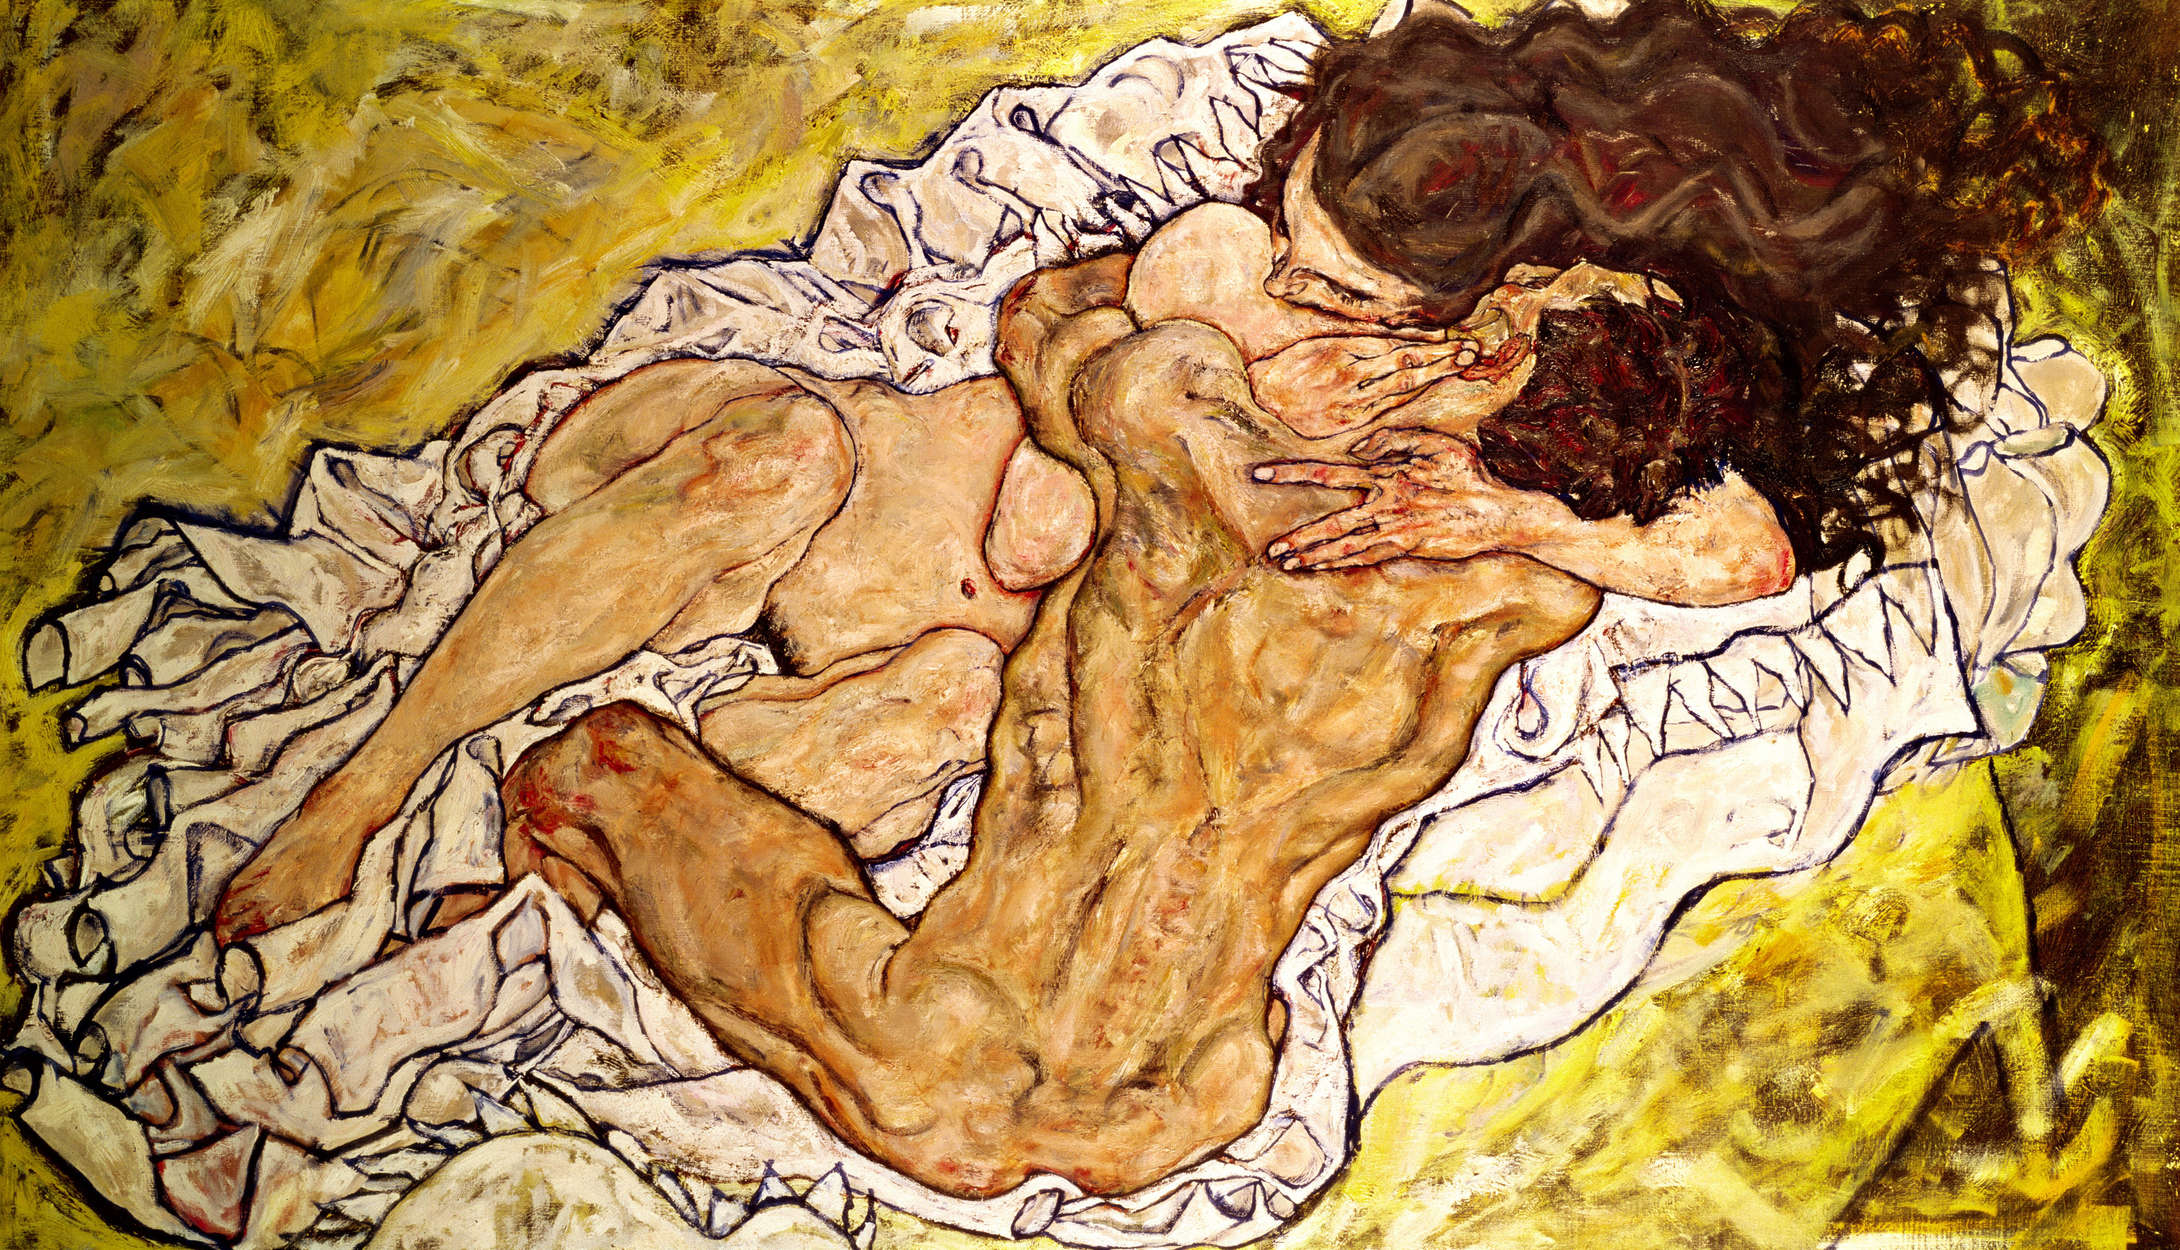             Fototapete "Die Umarmung" von Egon Schiele
        